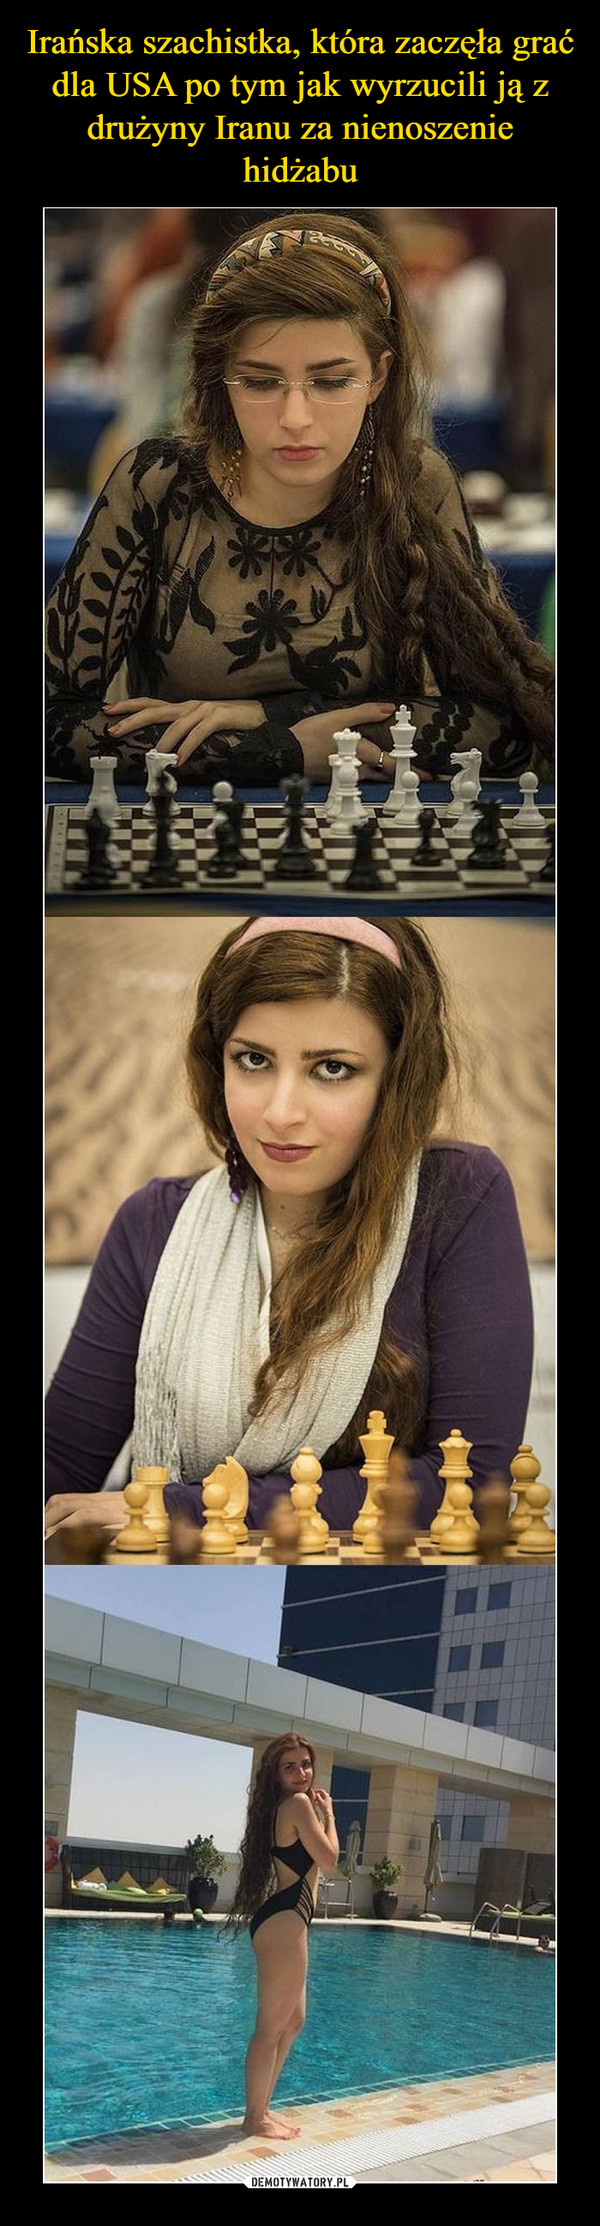 Irańska szachistka, która zaczęła grać dla USA po tym jak wyrzucili ją z drużyny Iranu za nienoszenie hidżabu